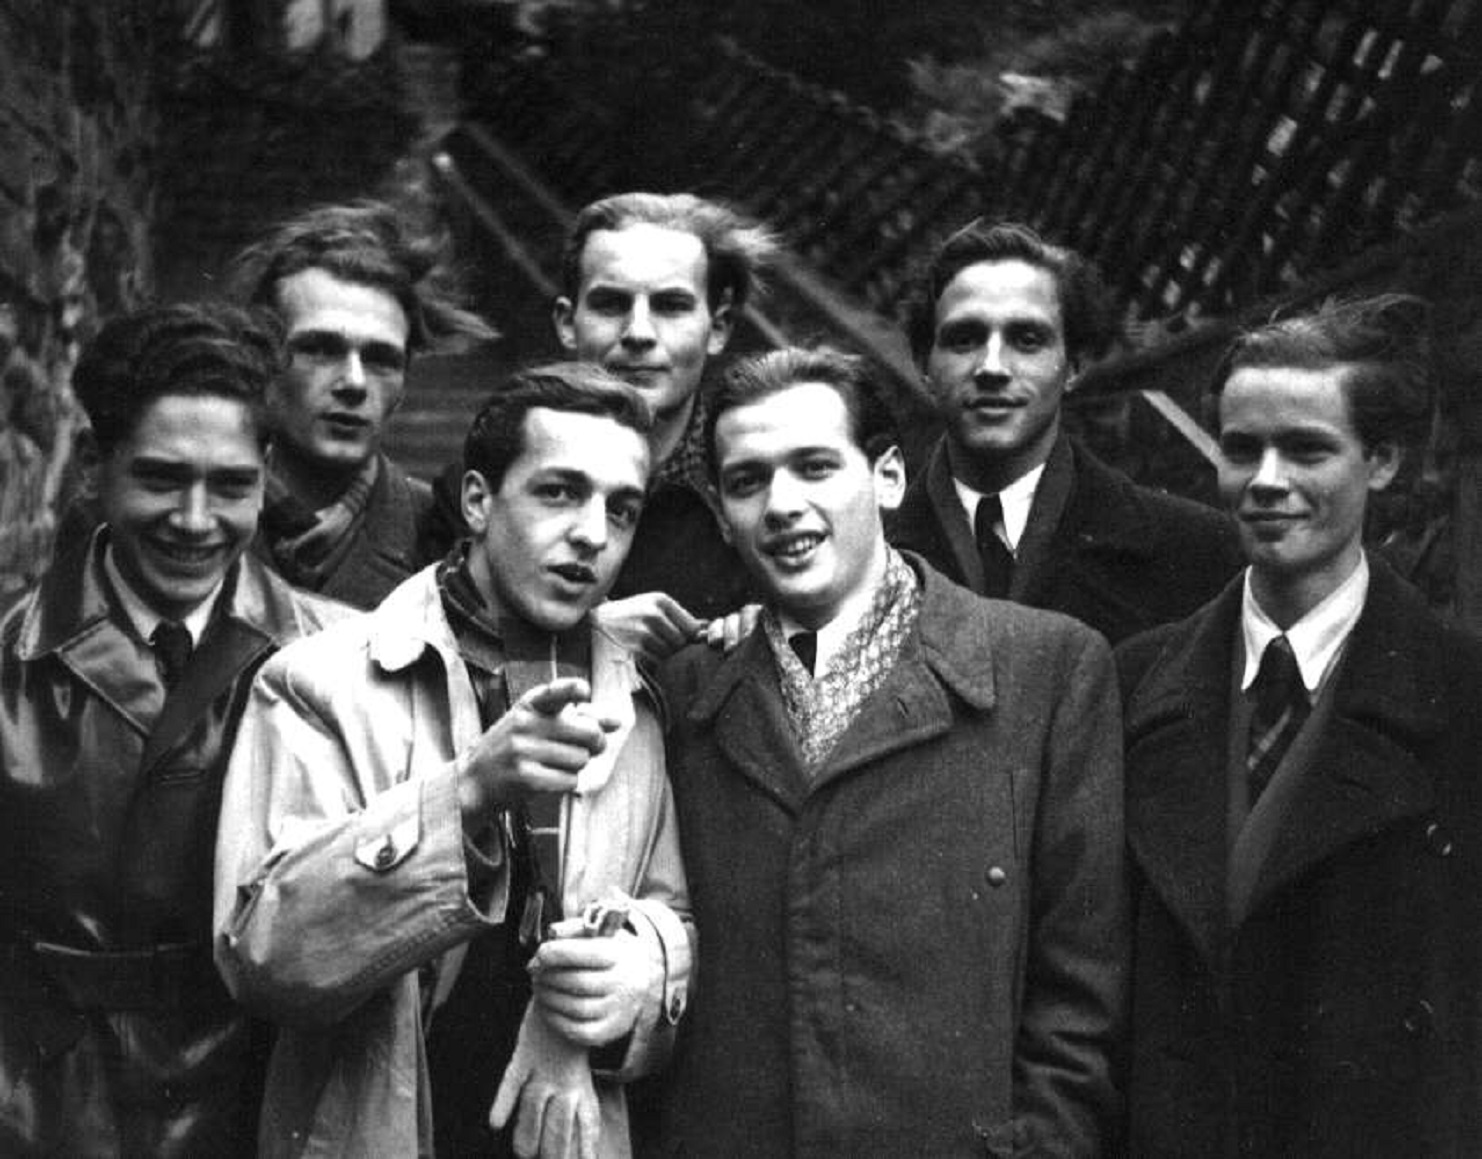 Helmut KRETSCHMAR, 2e depuis la gauche dans cette photo d'ensemble datant de 1948: un grand merci à Jakob, qui m'a procuré cette photo